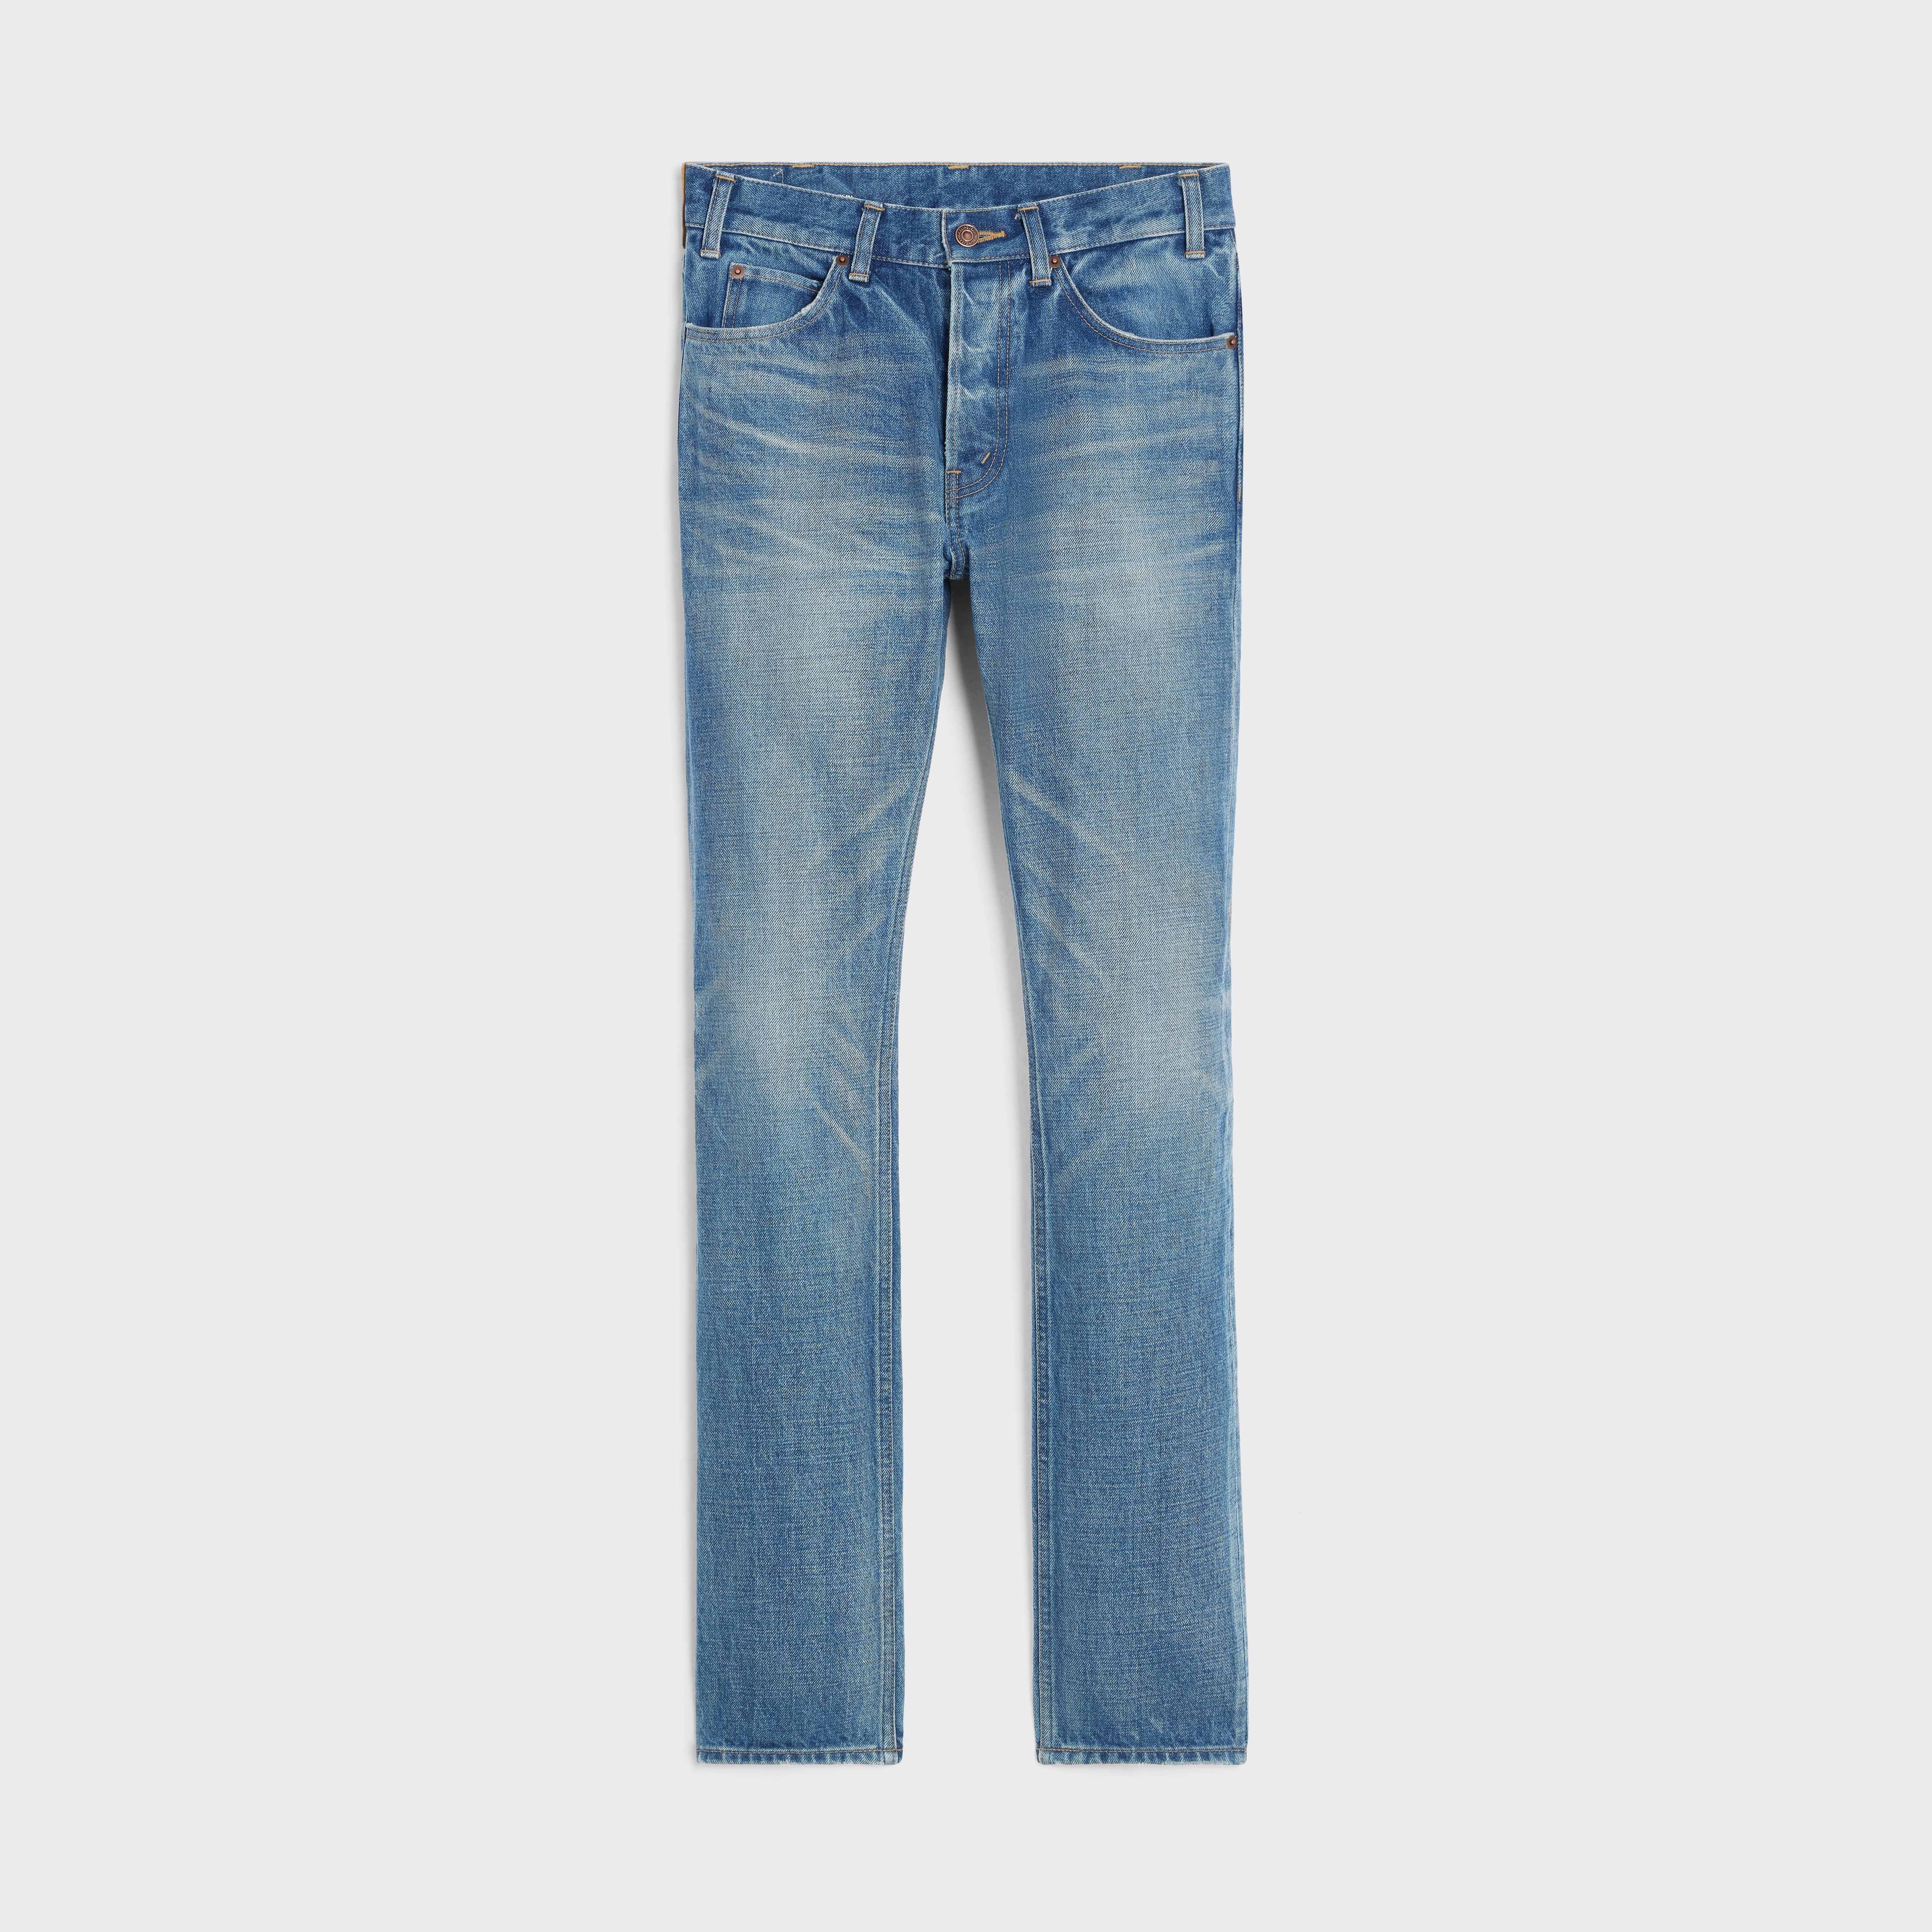 Lou jeans in vintage union wash denim - 1